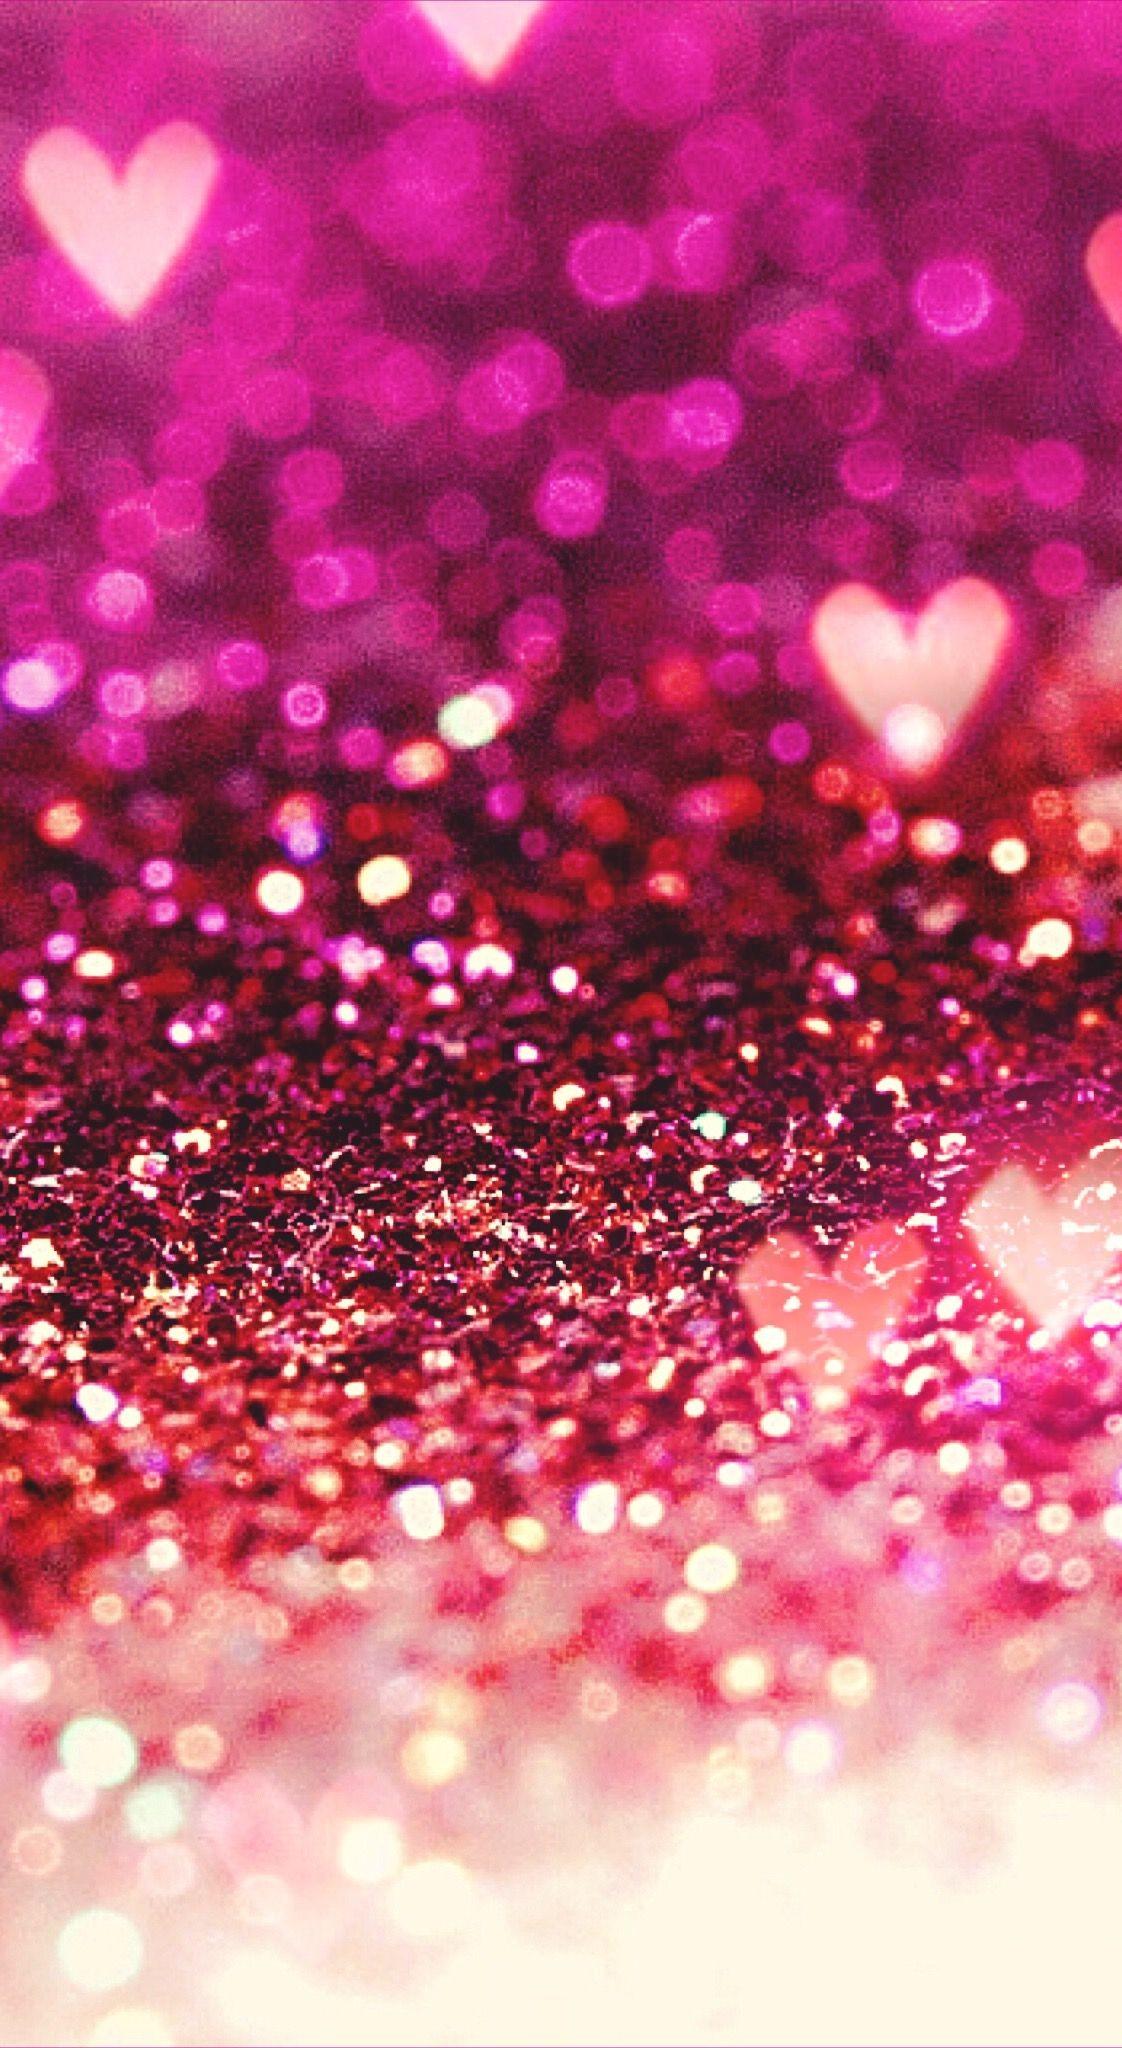 Pink Glitter Phone Wallpaper